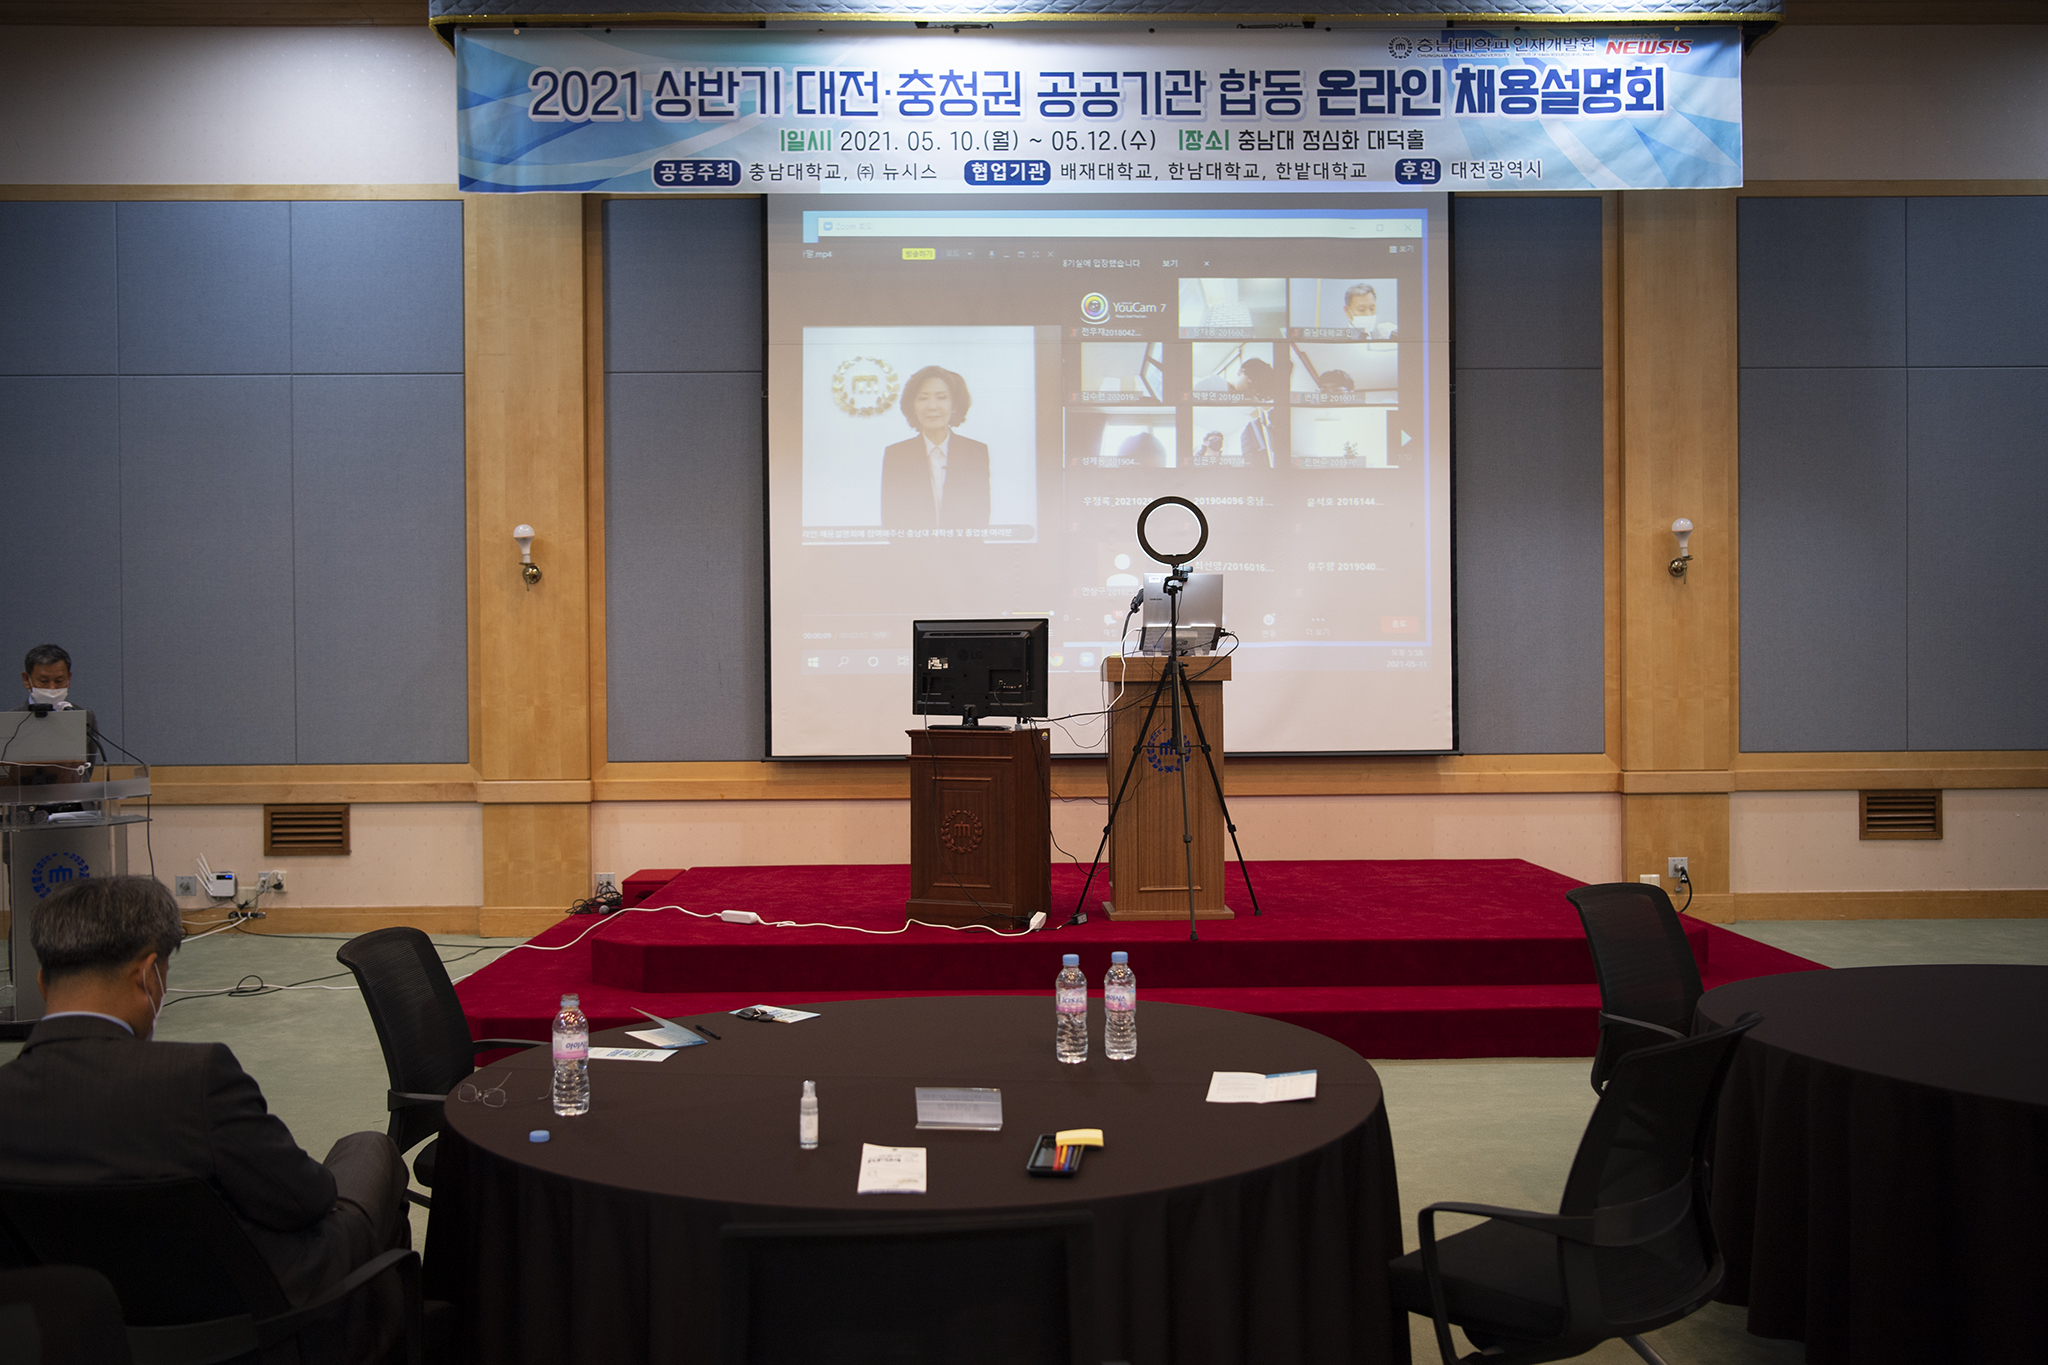 대전-충청 공공기관 합동 온라인 채용설명회 [2021. 05. 11.(화) 17:30] 사진2